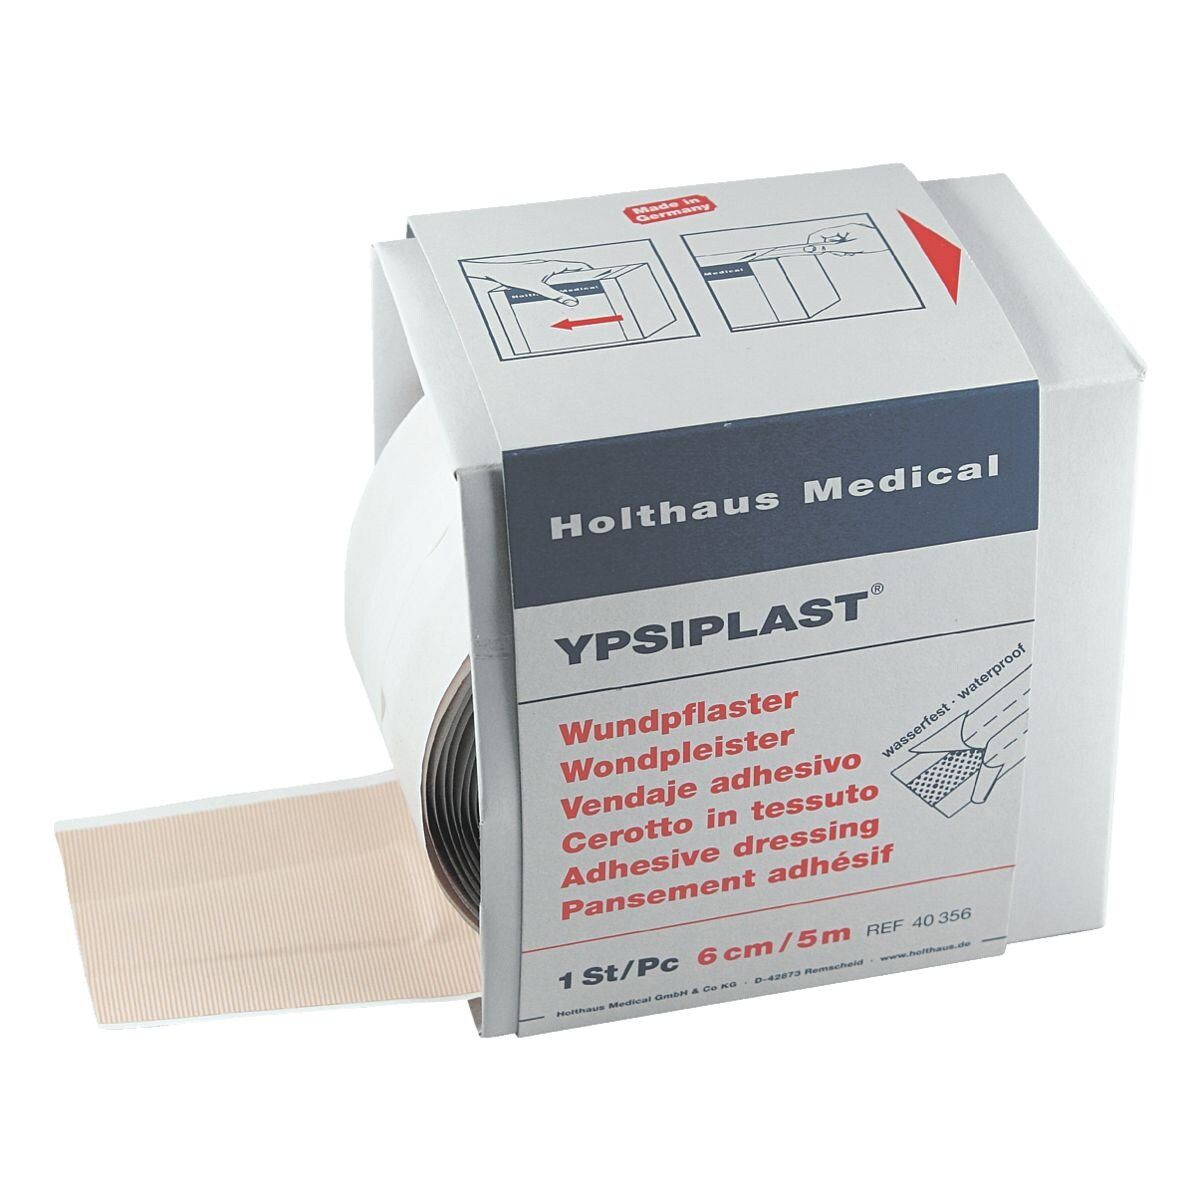 Holthaus Medical Wundpflaster YPSIPLAST®, in Spenderbox, wasserfest / ölbeständig